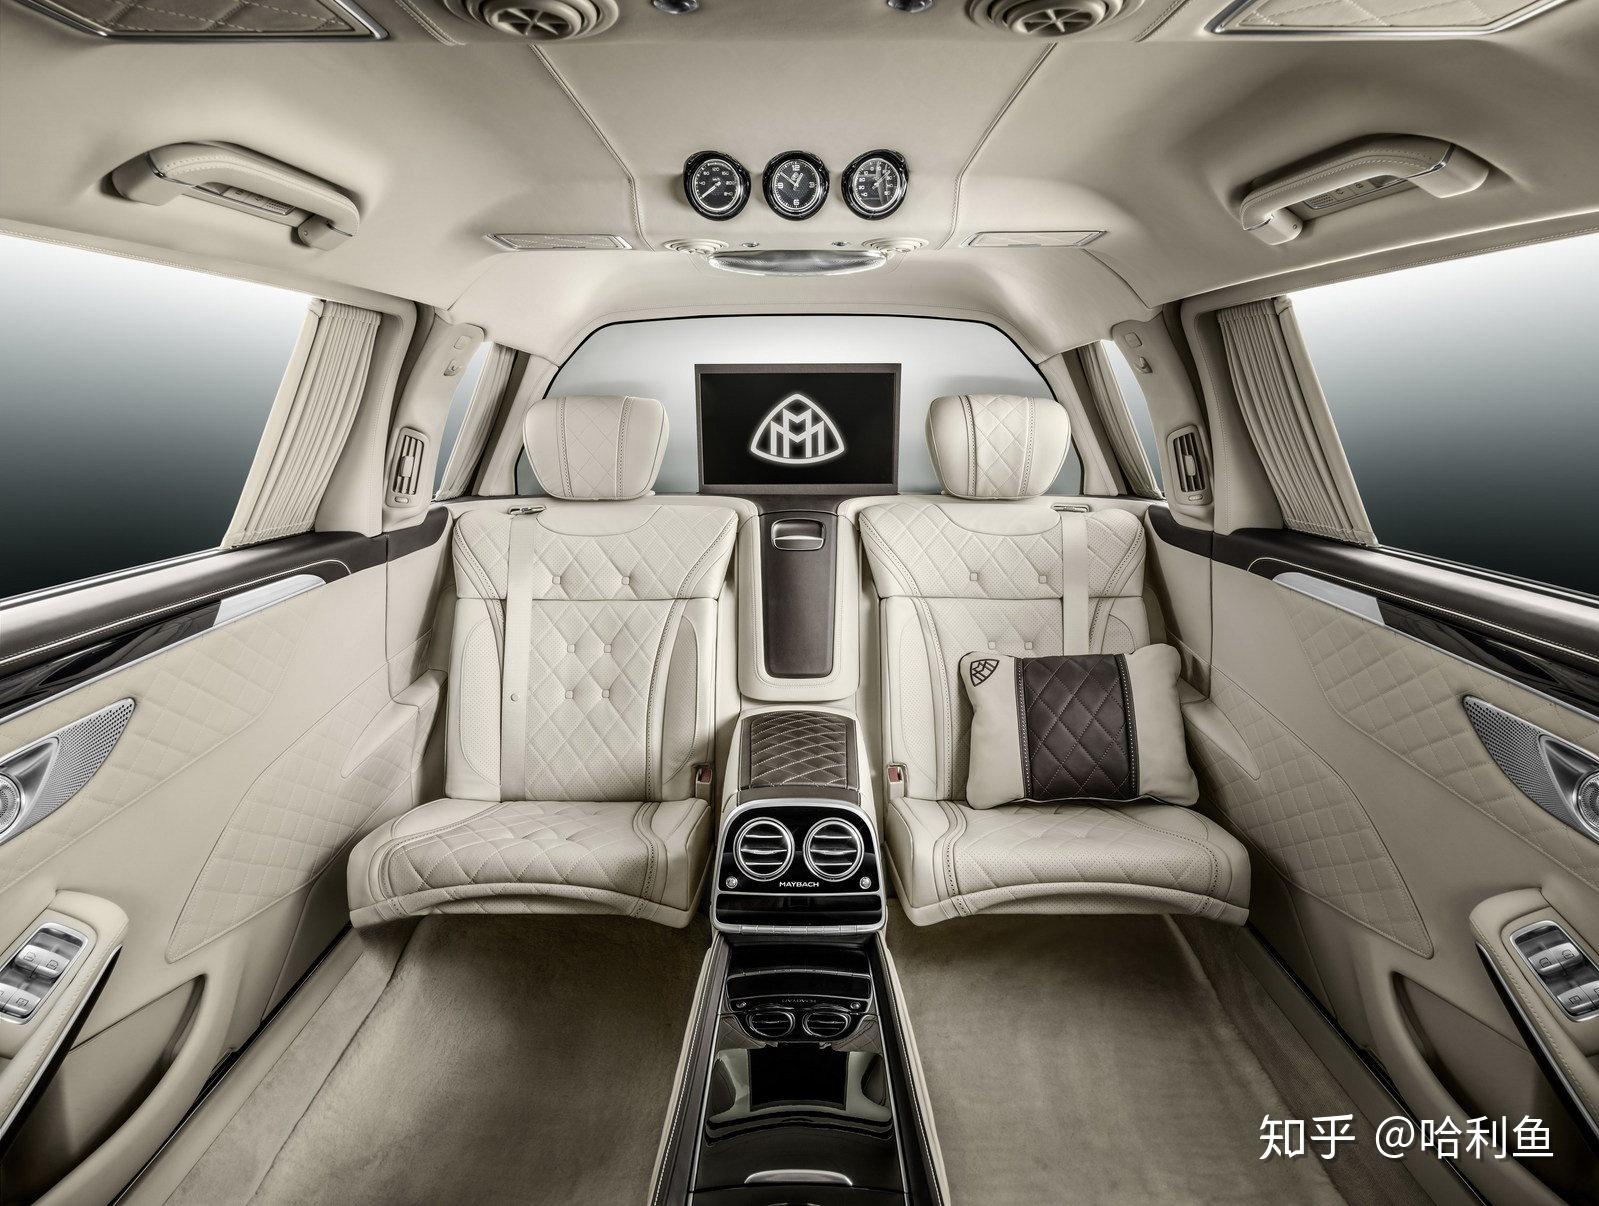 实拍迈巴赫S800北京仅一辆 最贵最顶配的奔驰 双色设计彰显尊贵